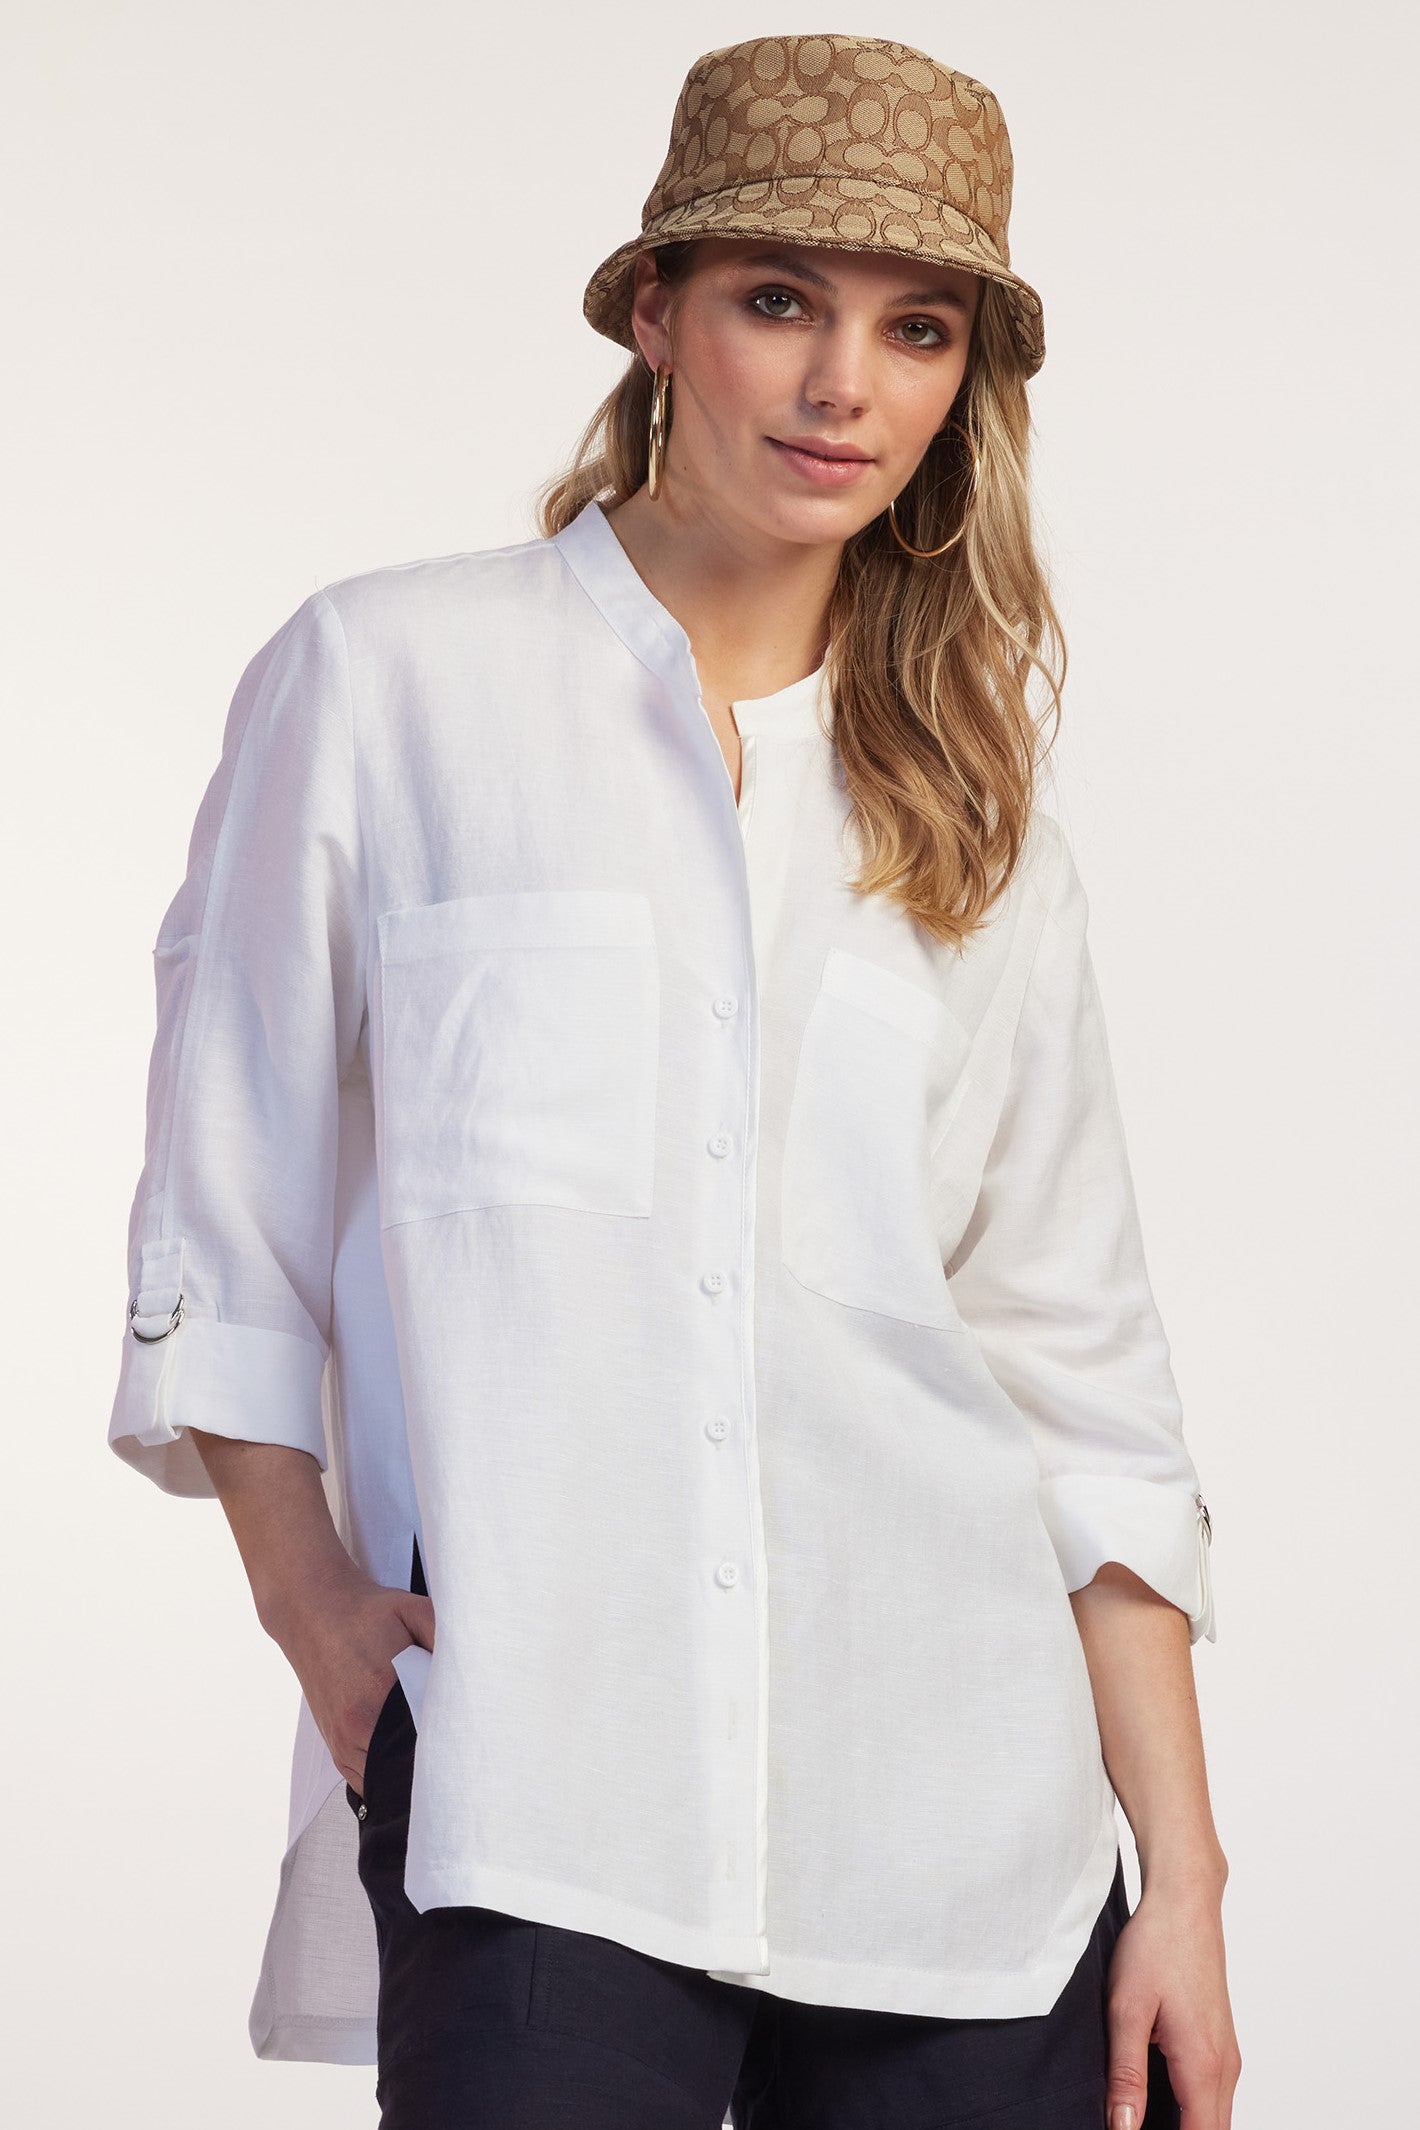 PAULA RYAN RELAXED Linen OverShirt - White - Paula Ryan